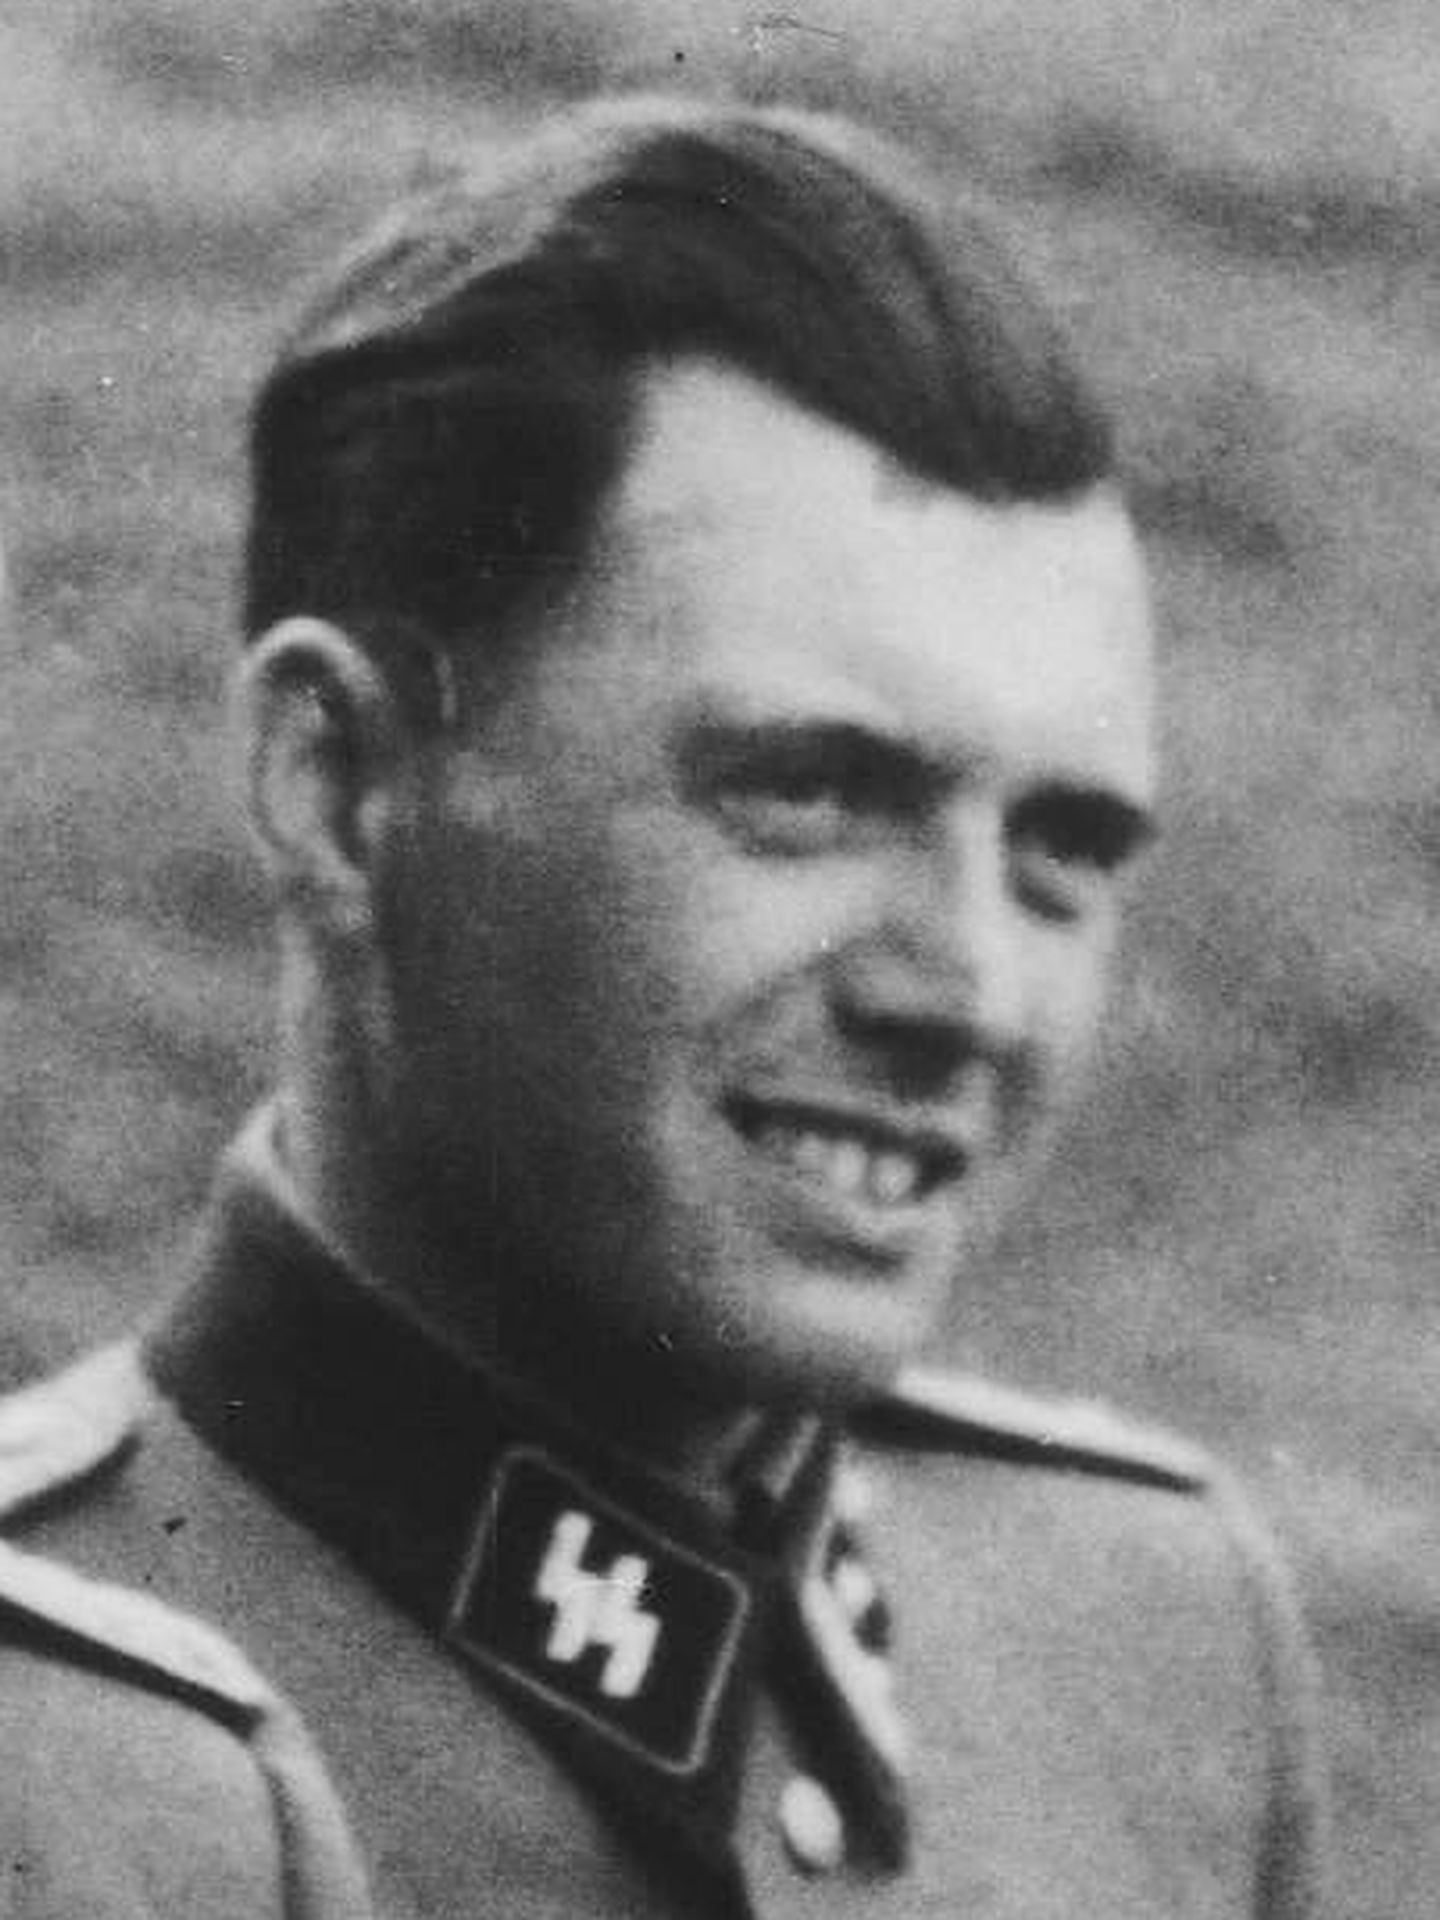 Josef Mengele. 